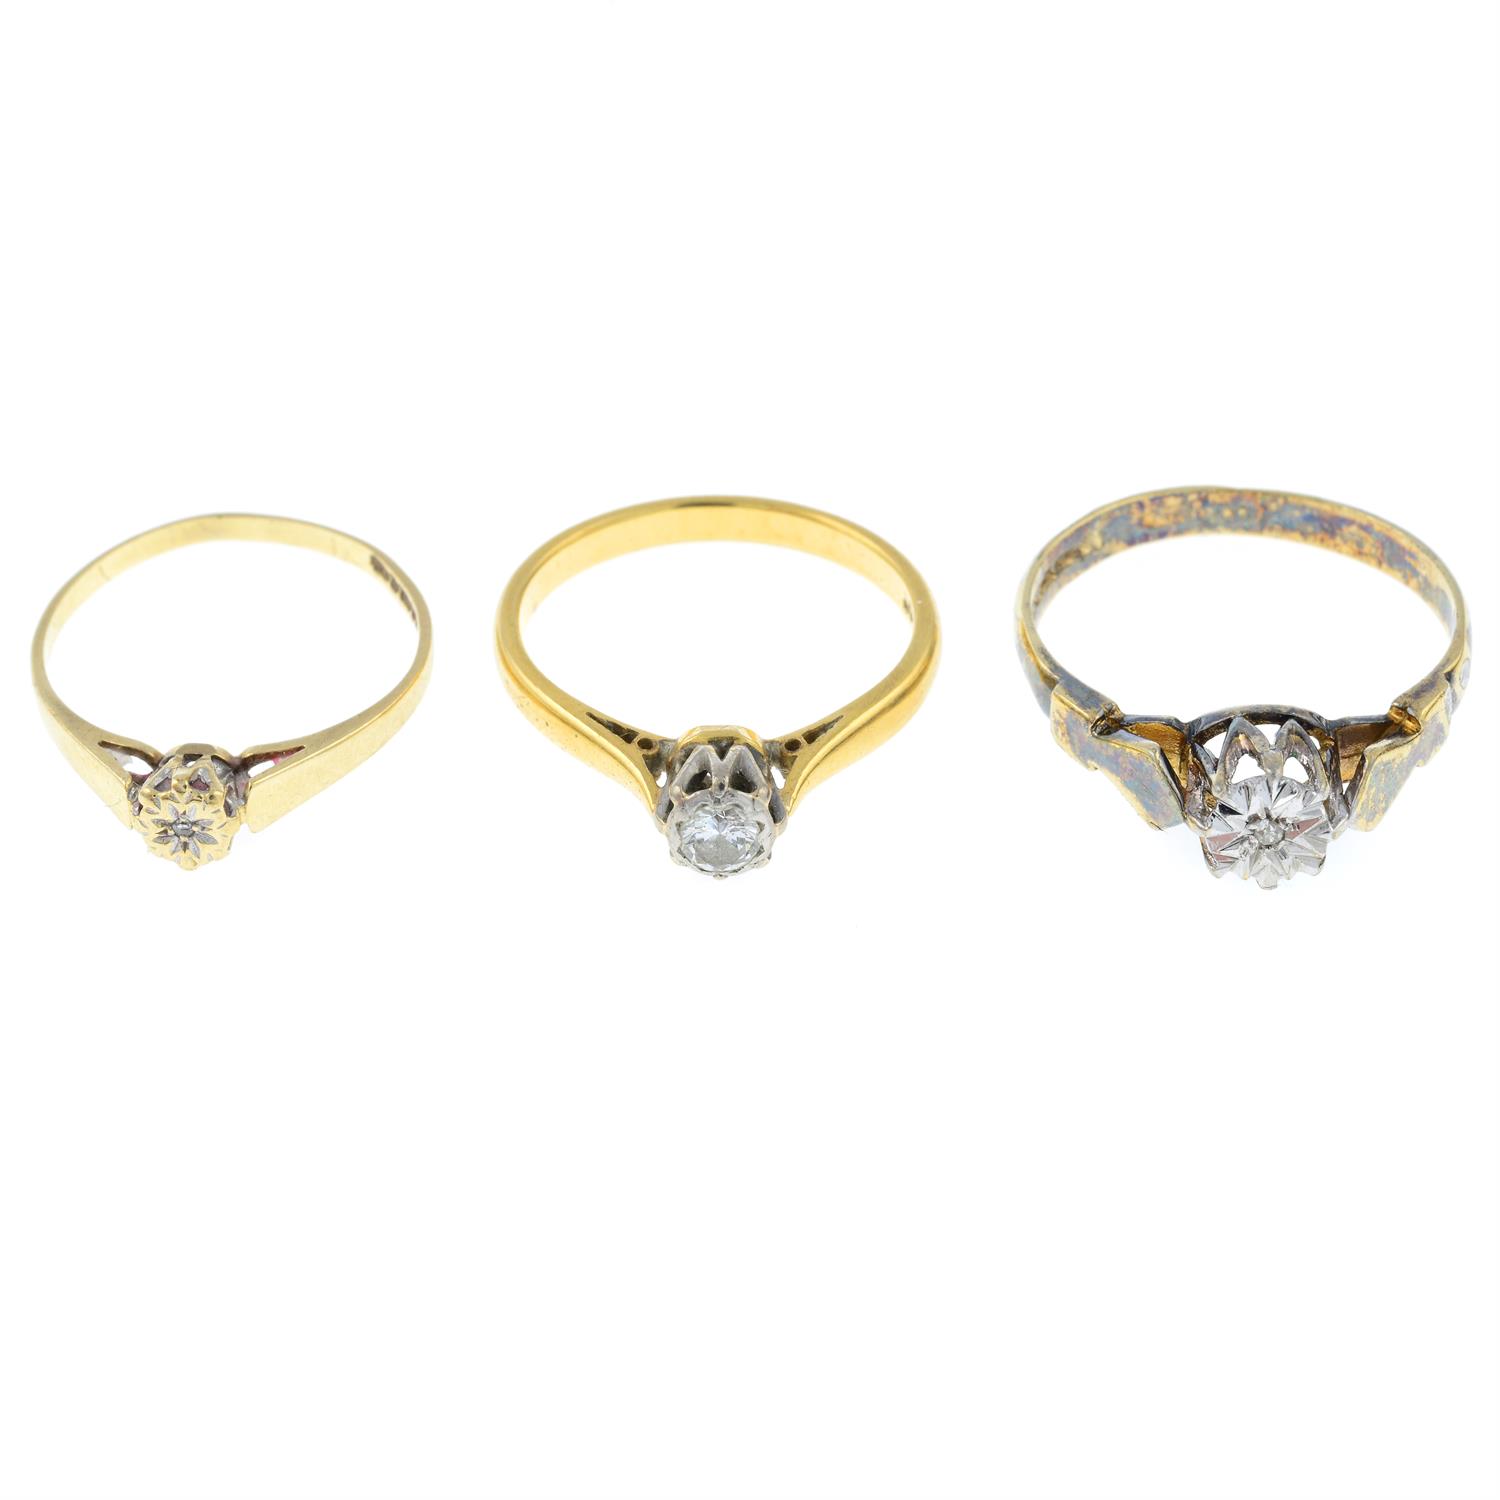 Three diamond single-stone rings.